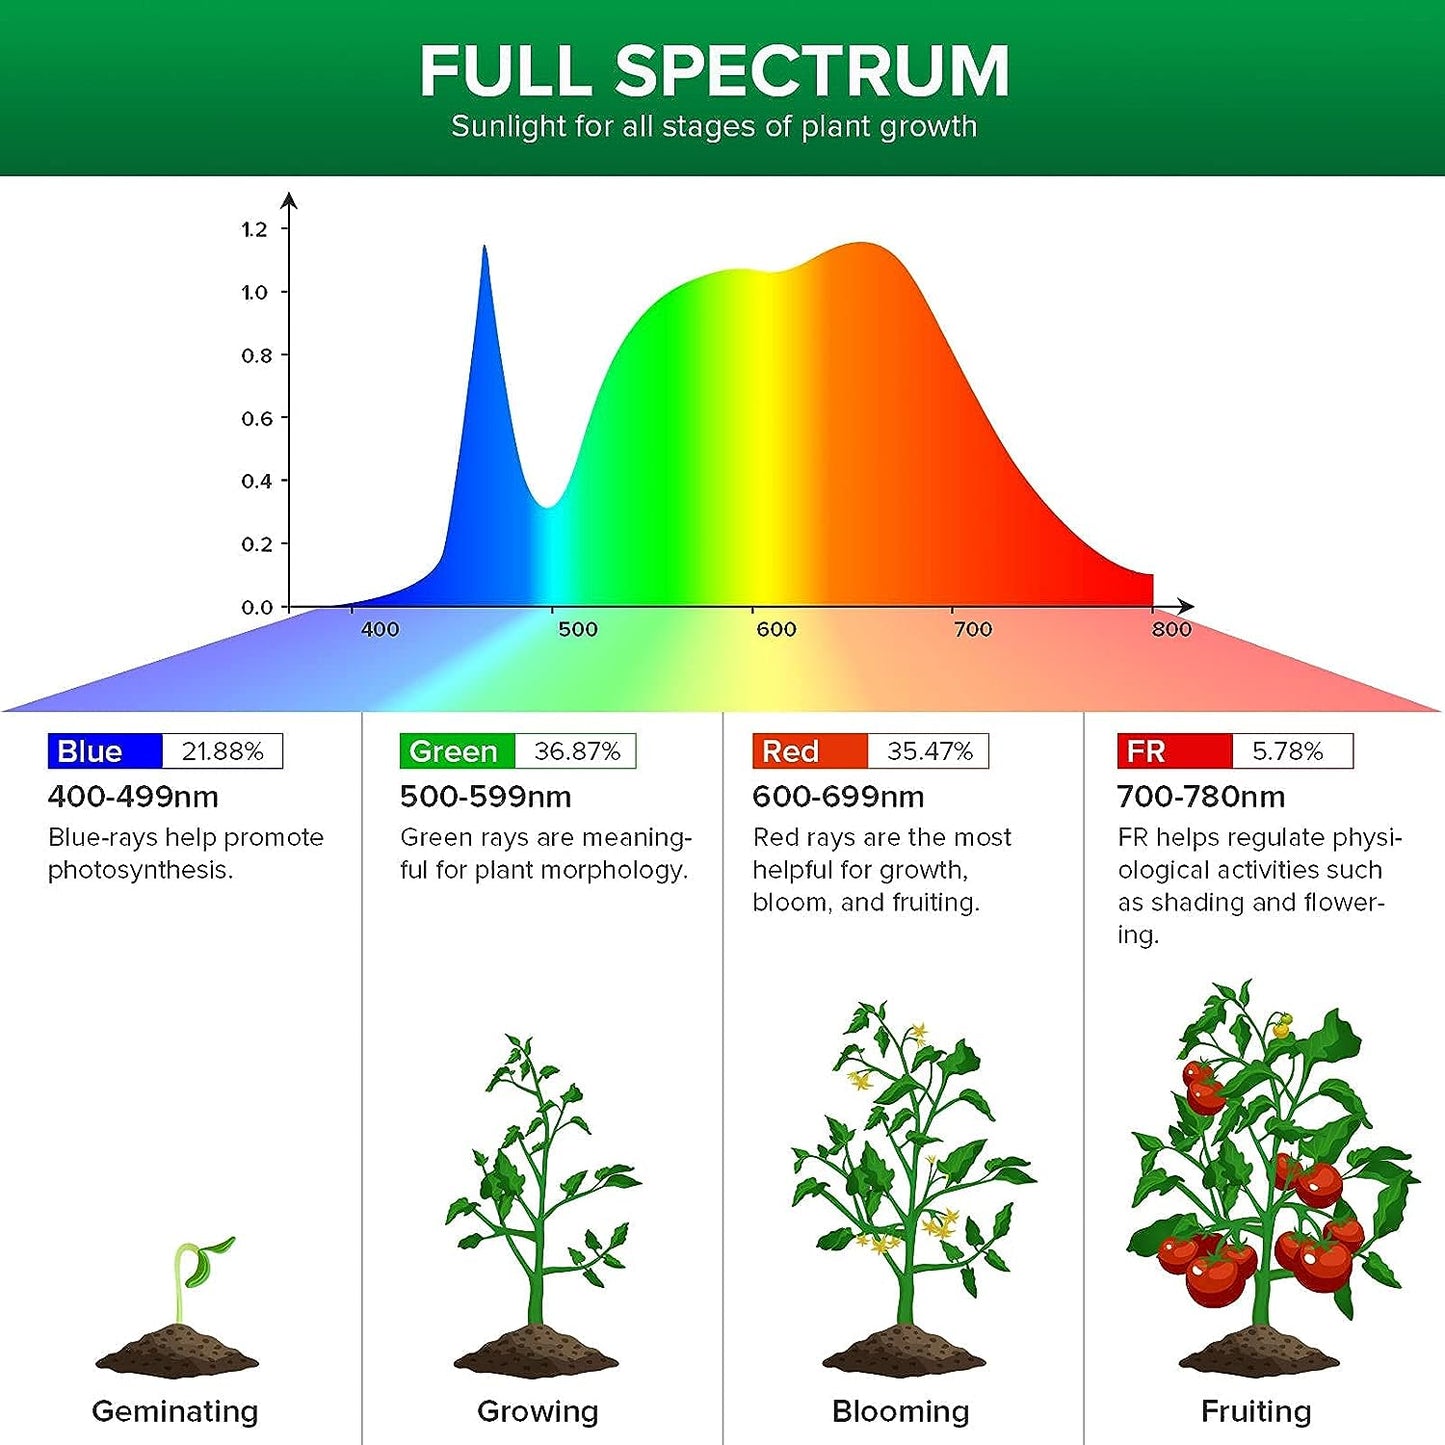 Sansi LED Grow Light Bulb - Full Spectrum 15 Watt